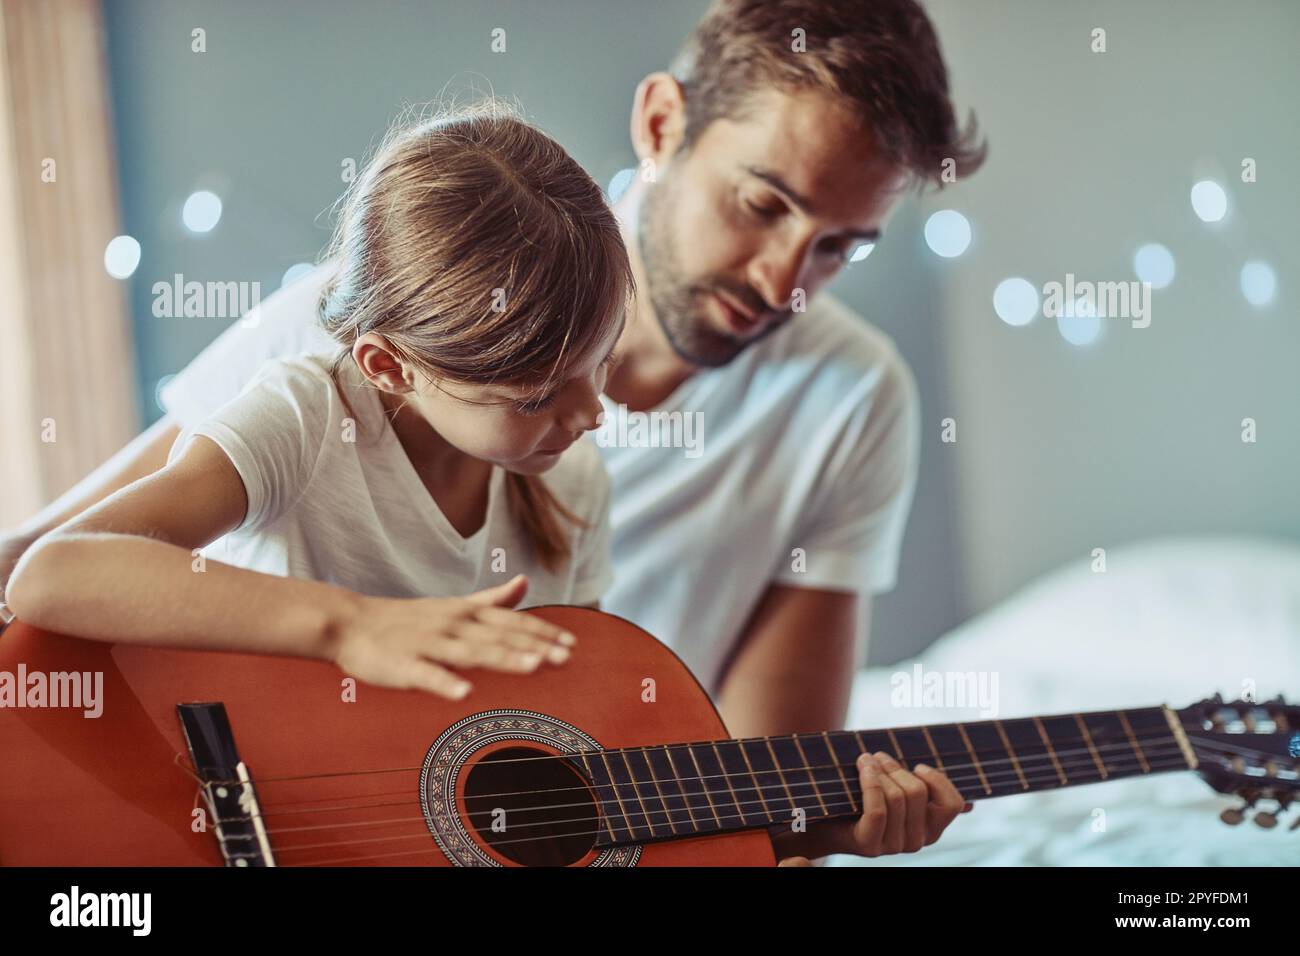 Zusammen wunderschöne Musik machen. Ein kleines Mädchen, das mit ihrem Vater Gitarre spielt. Stockfoto